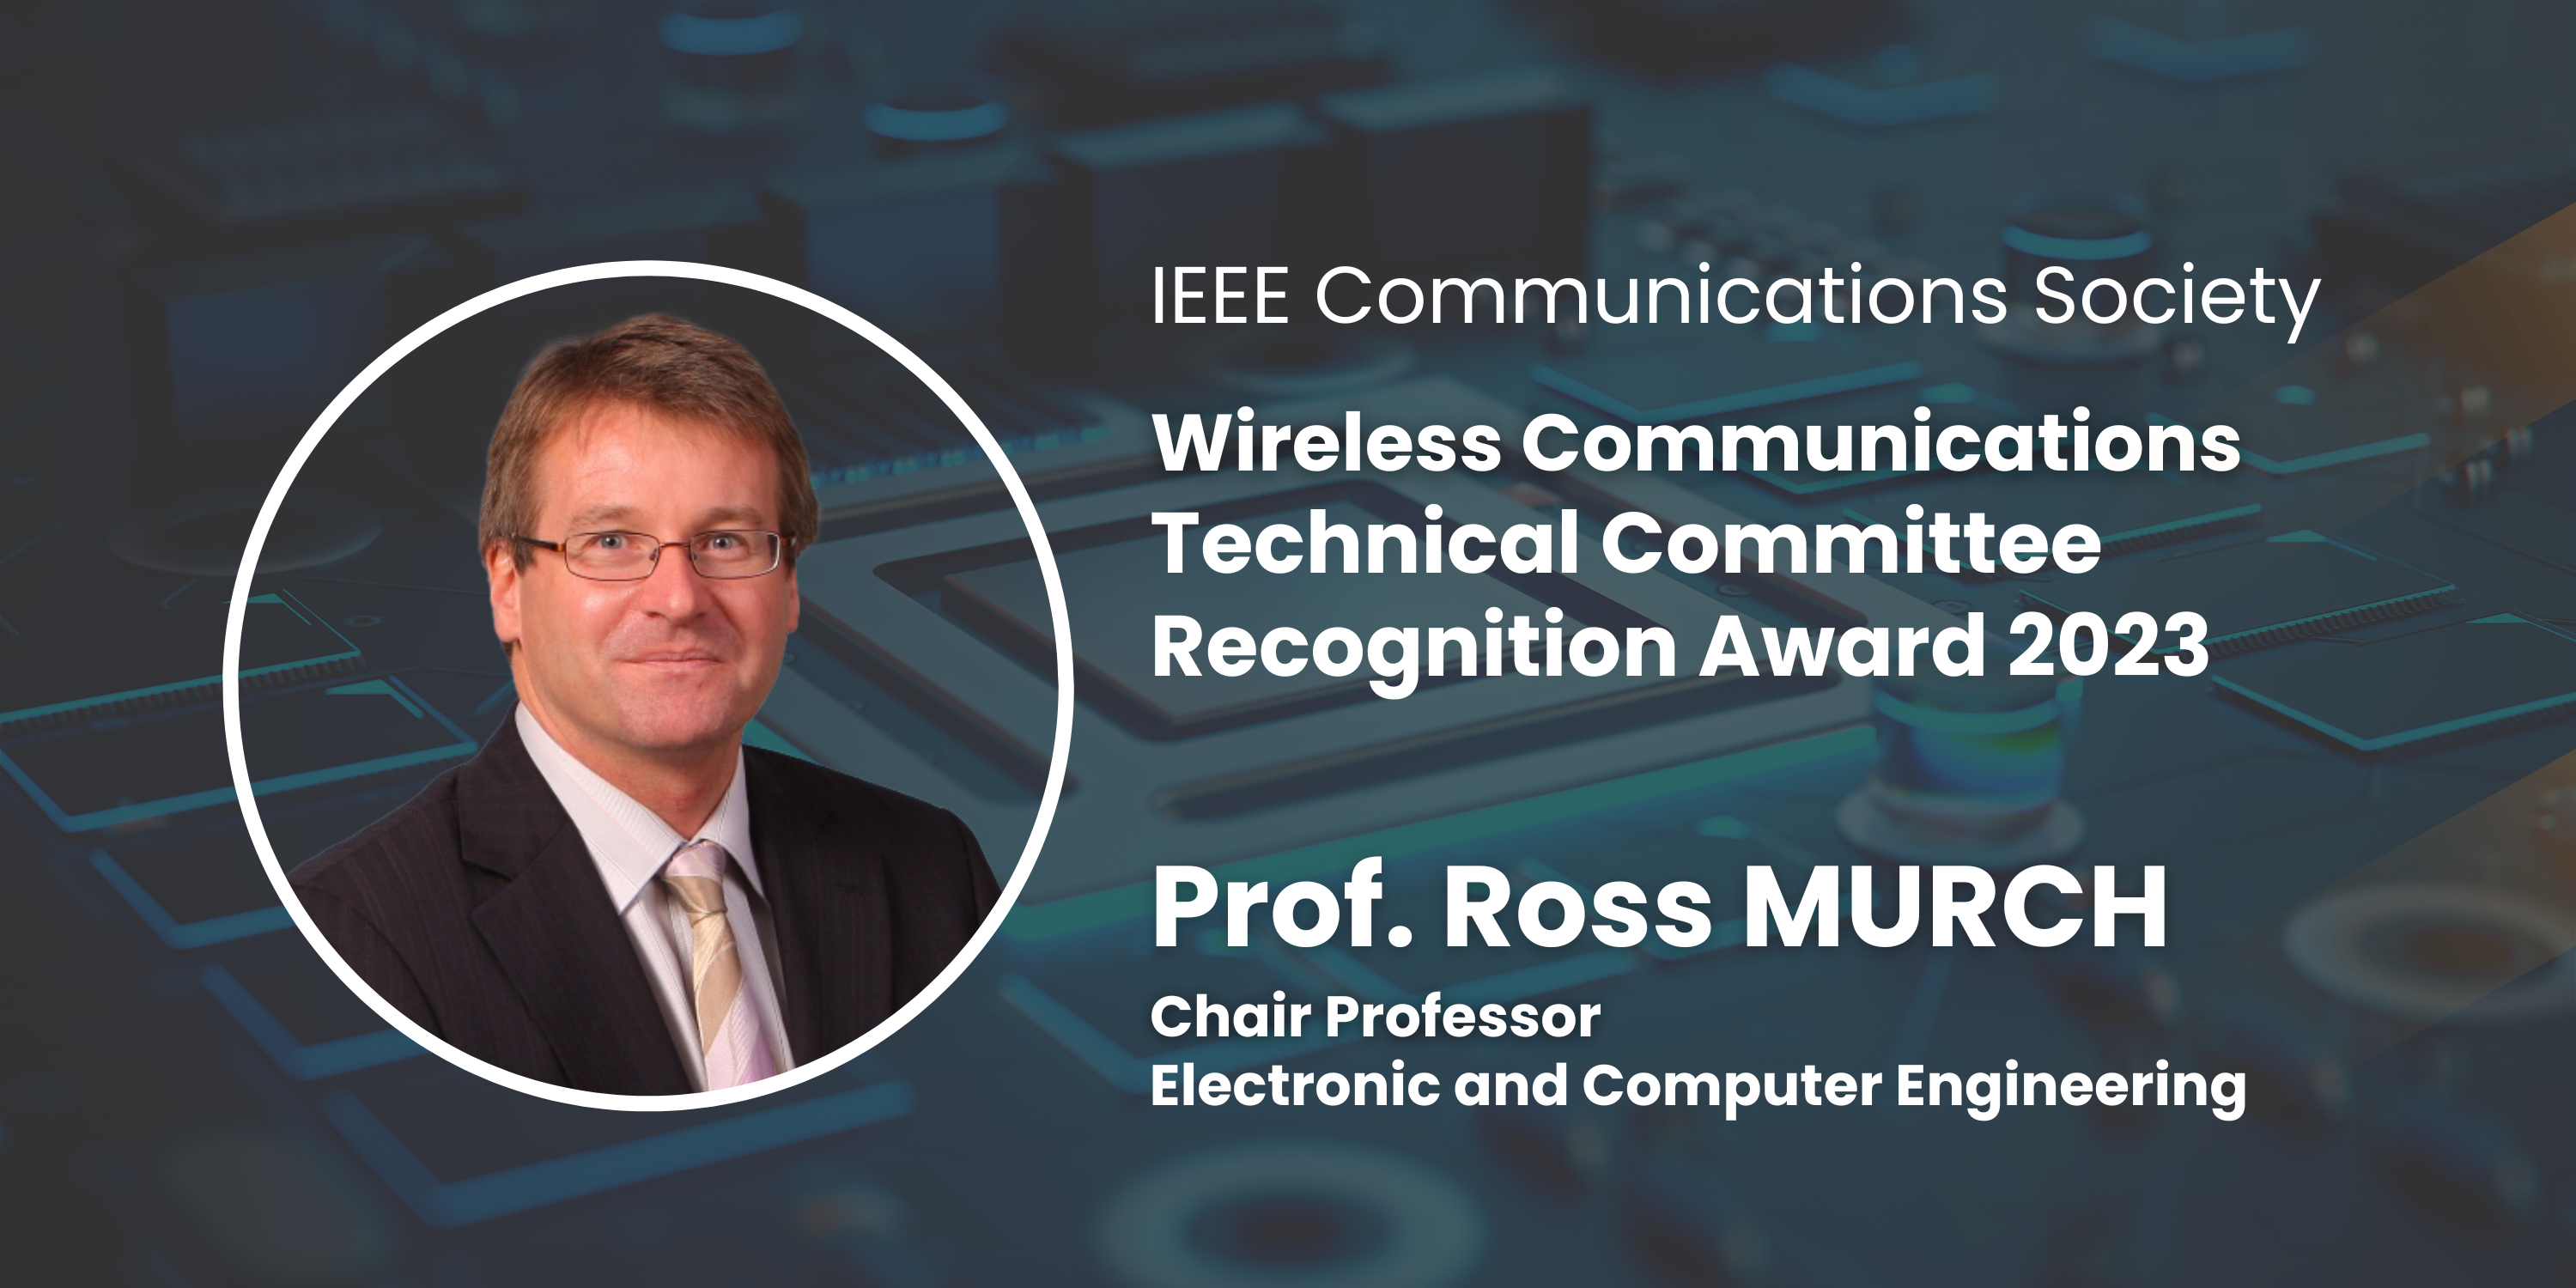 穆乐思教授在无线与移动通讯理论、系统和网络具有高度知名度和贡献良多，获得嘉许。